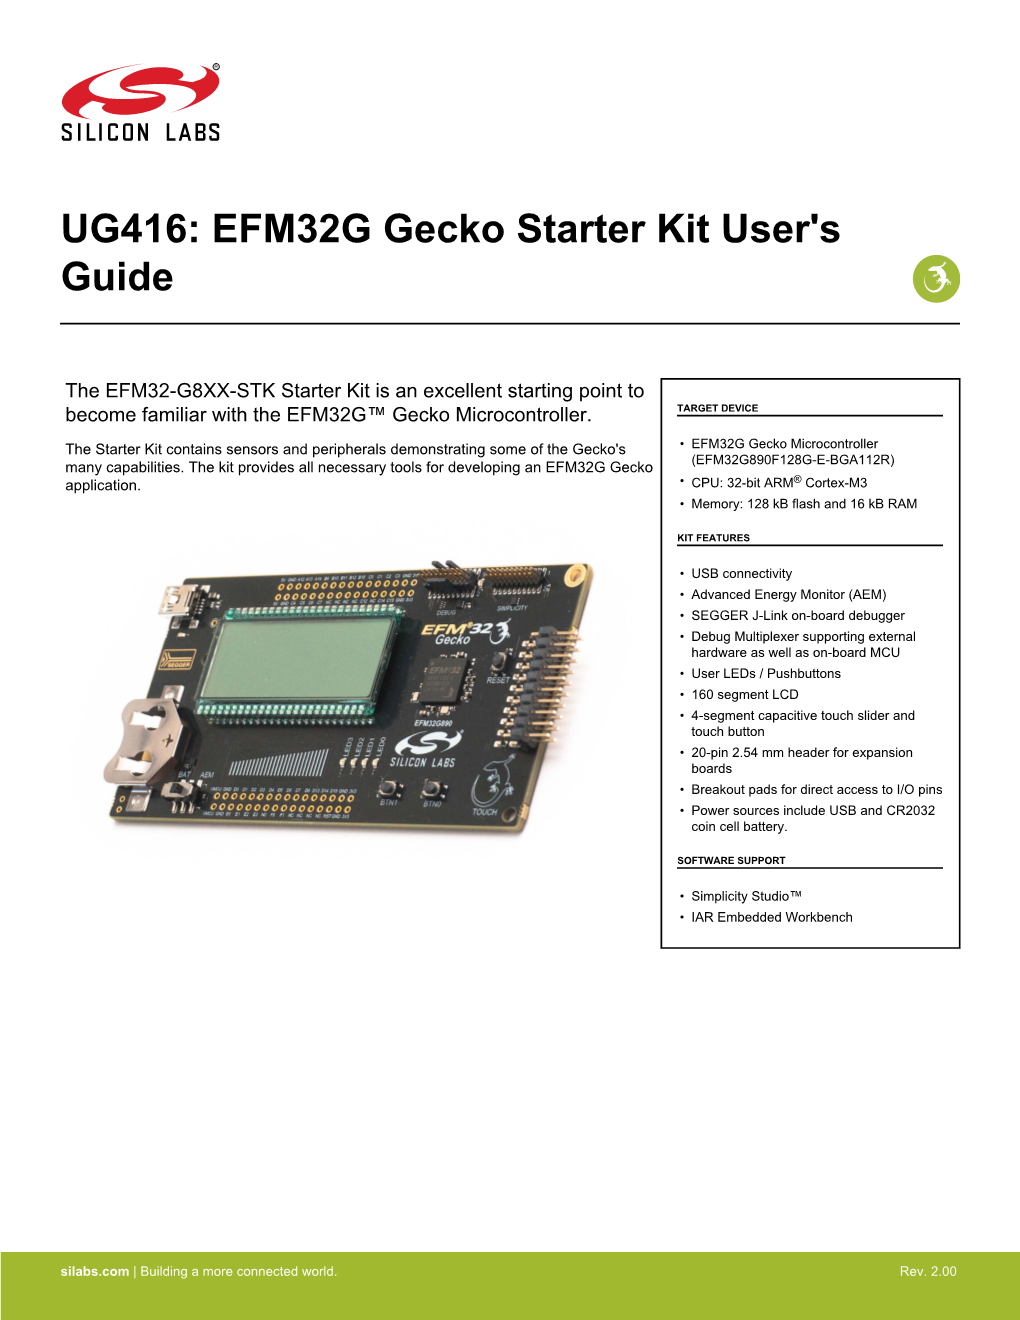 UG416: EFM32 Gecko Starter Kit User's Guide